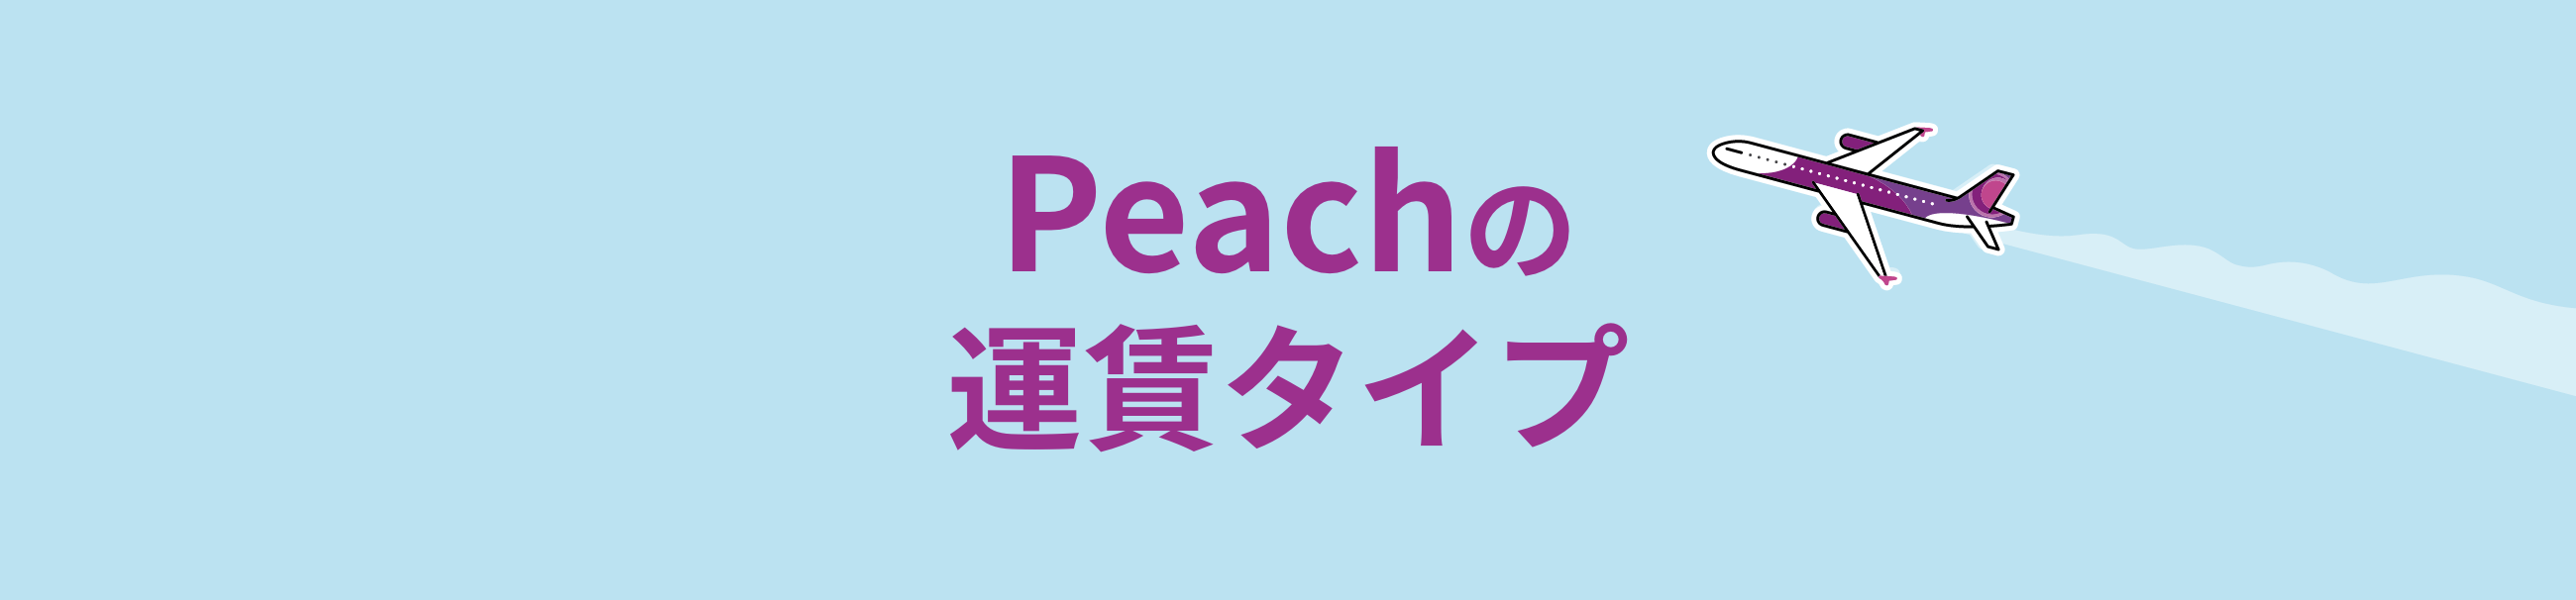 Peachの運賃タイプ